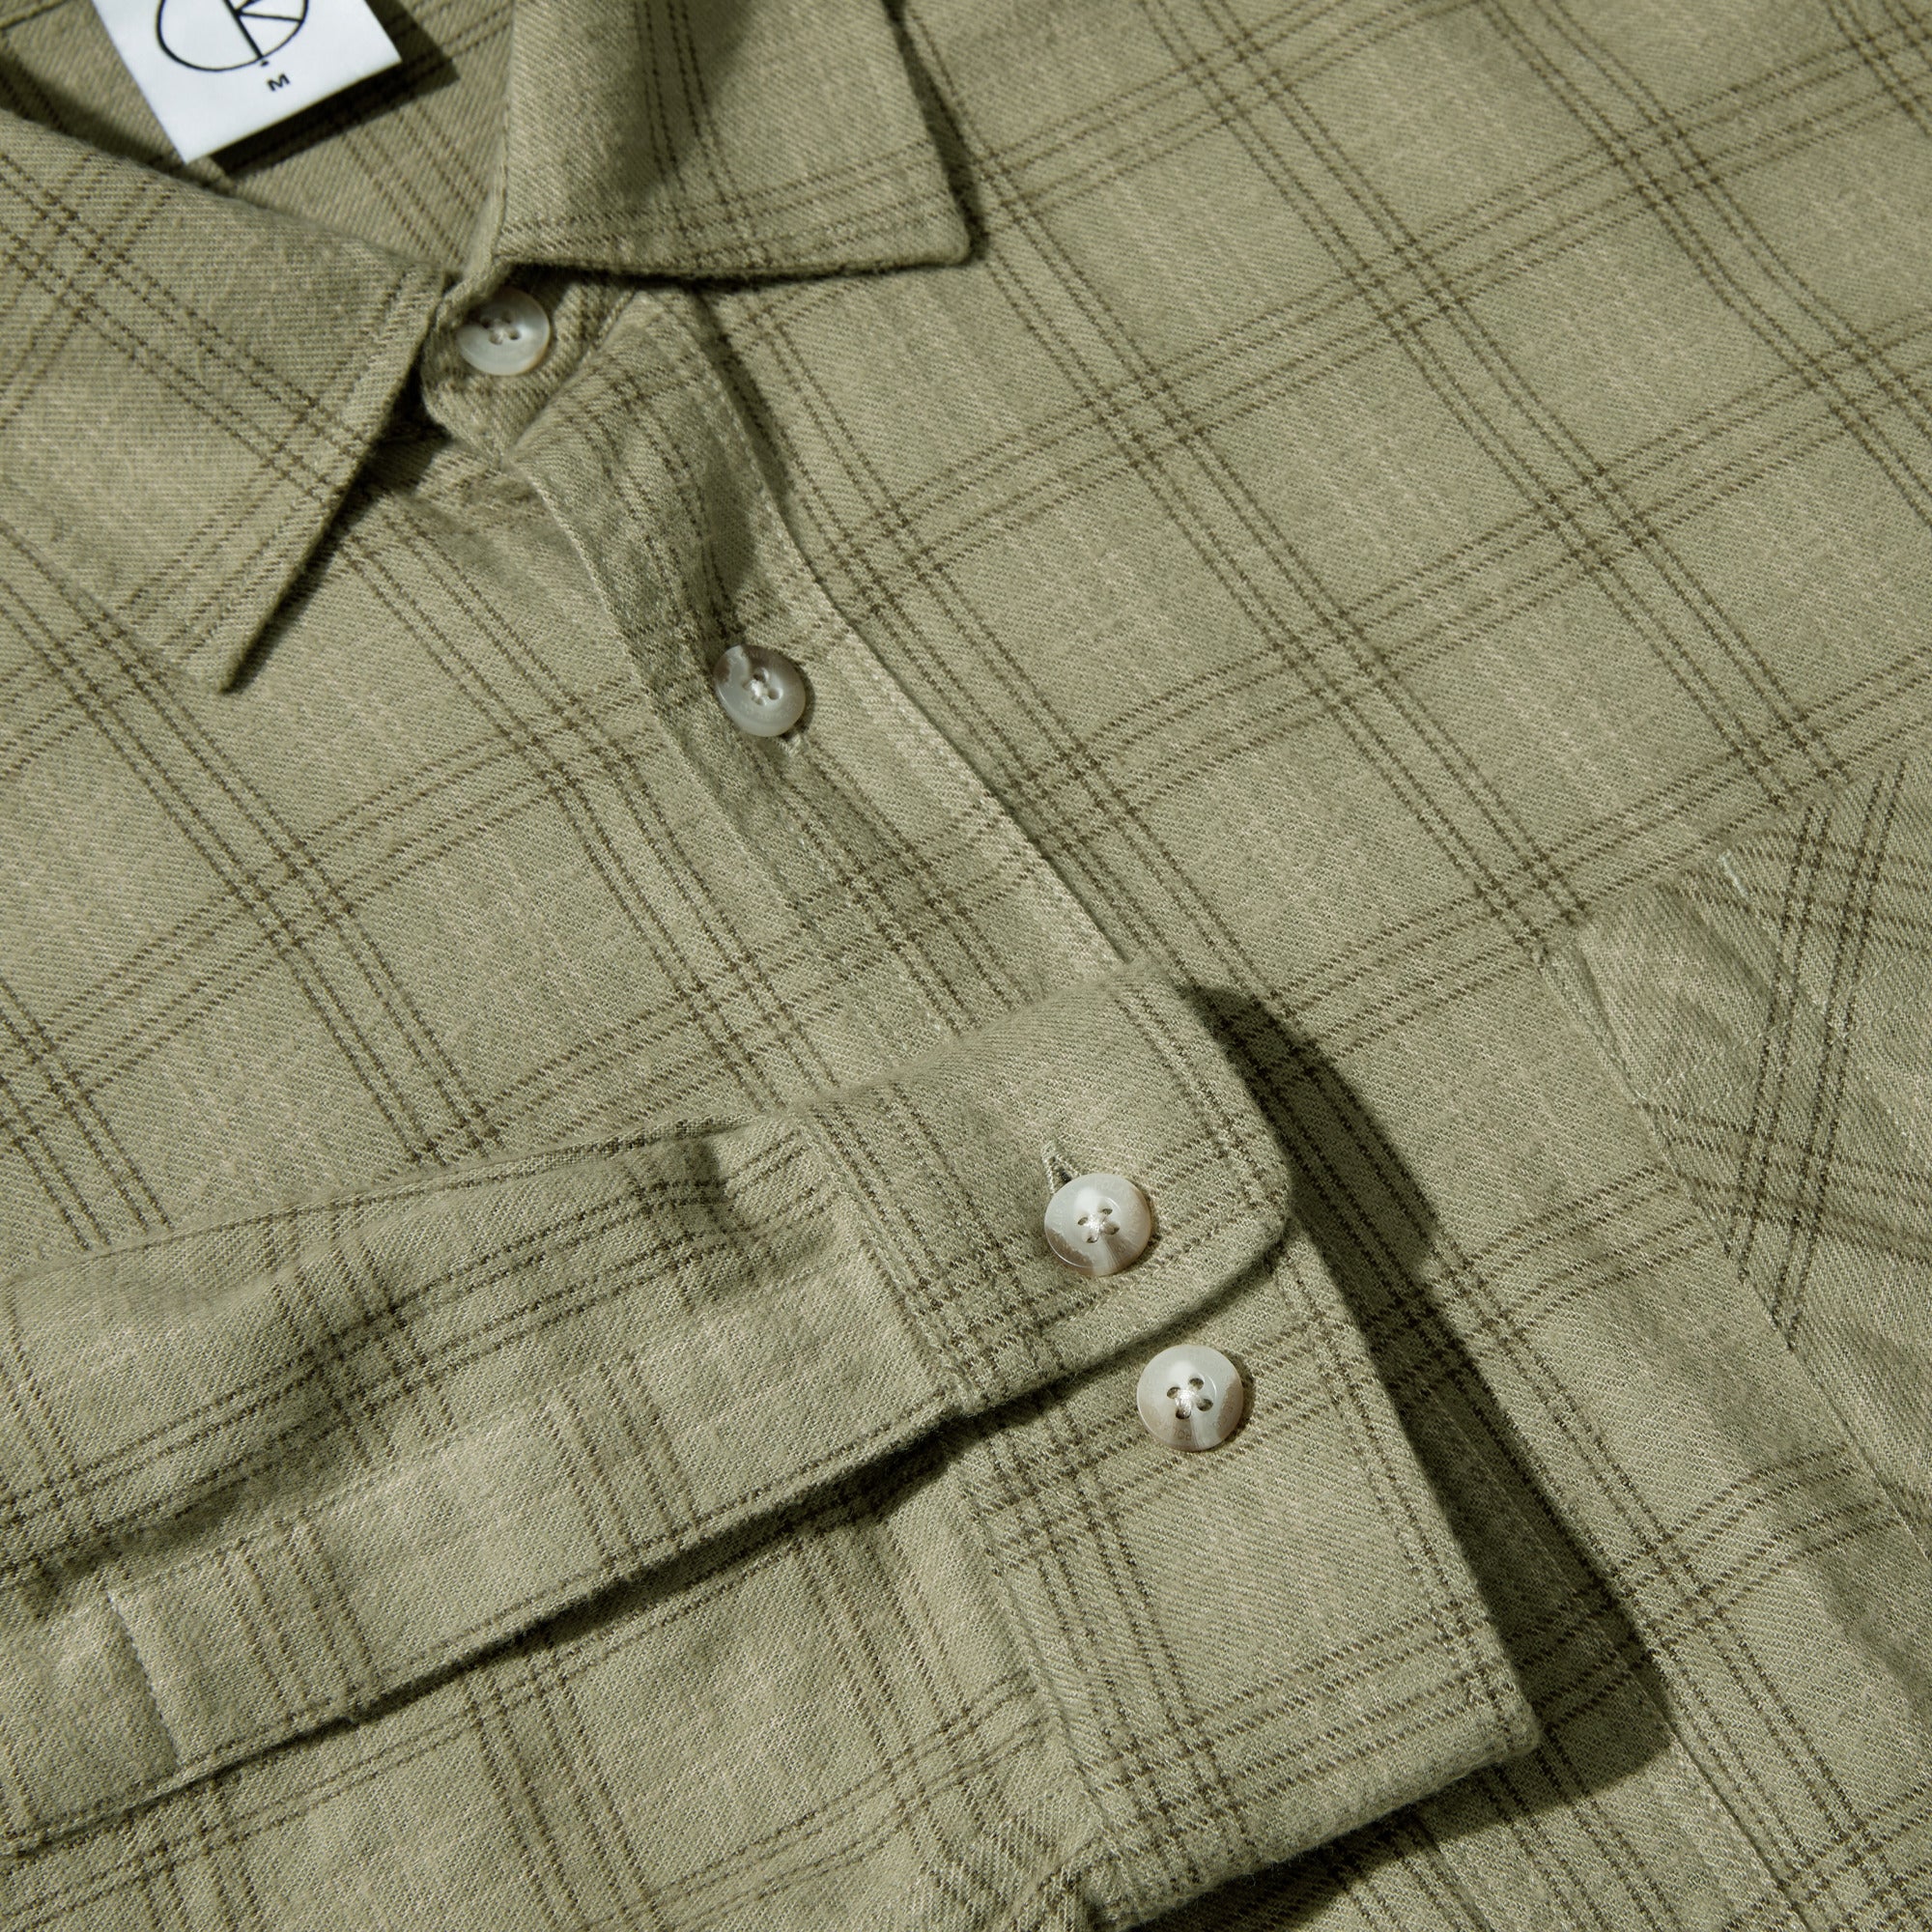 POLAR - Mitchell LS Shirt Flannel "Green / Beige"